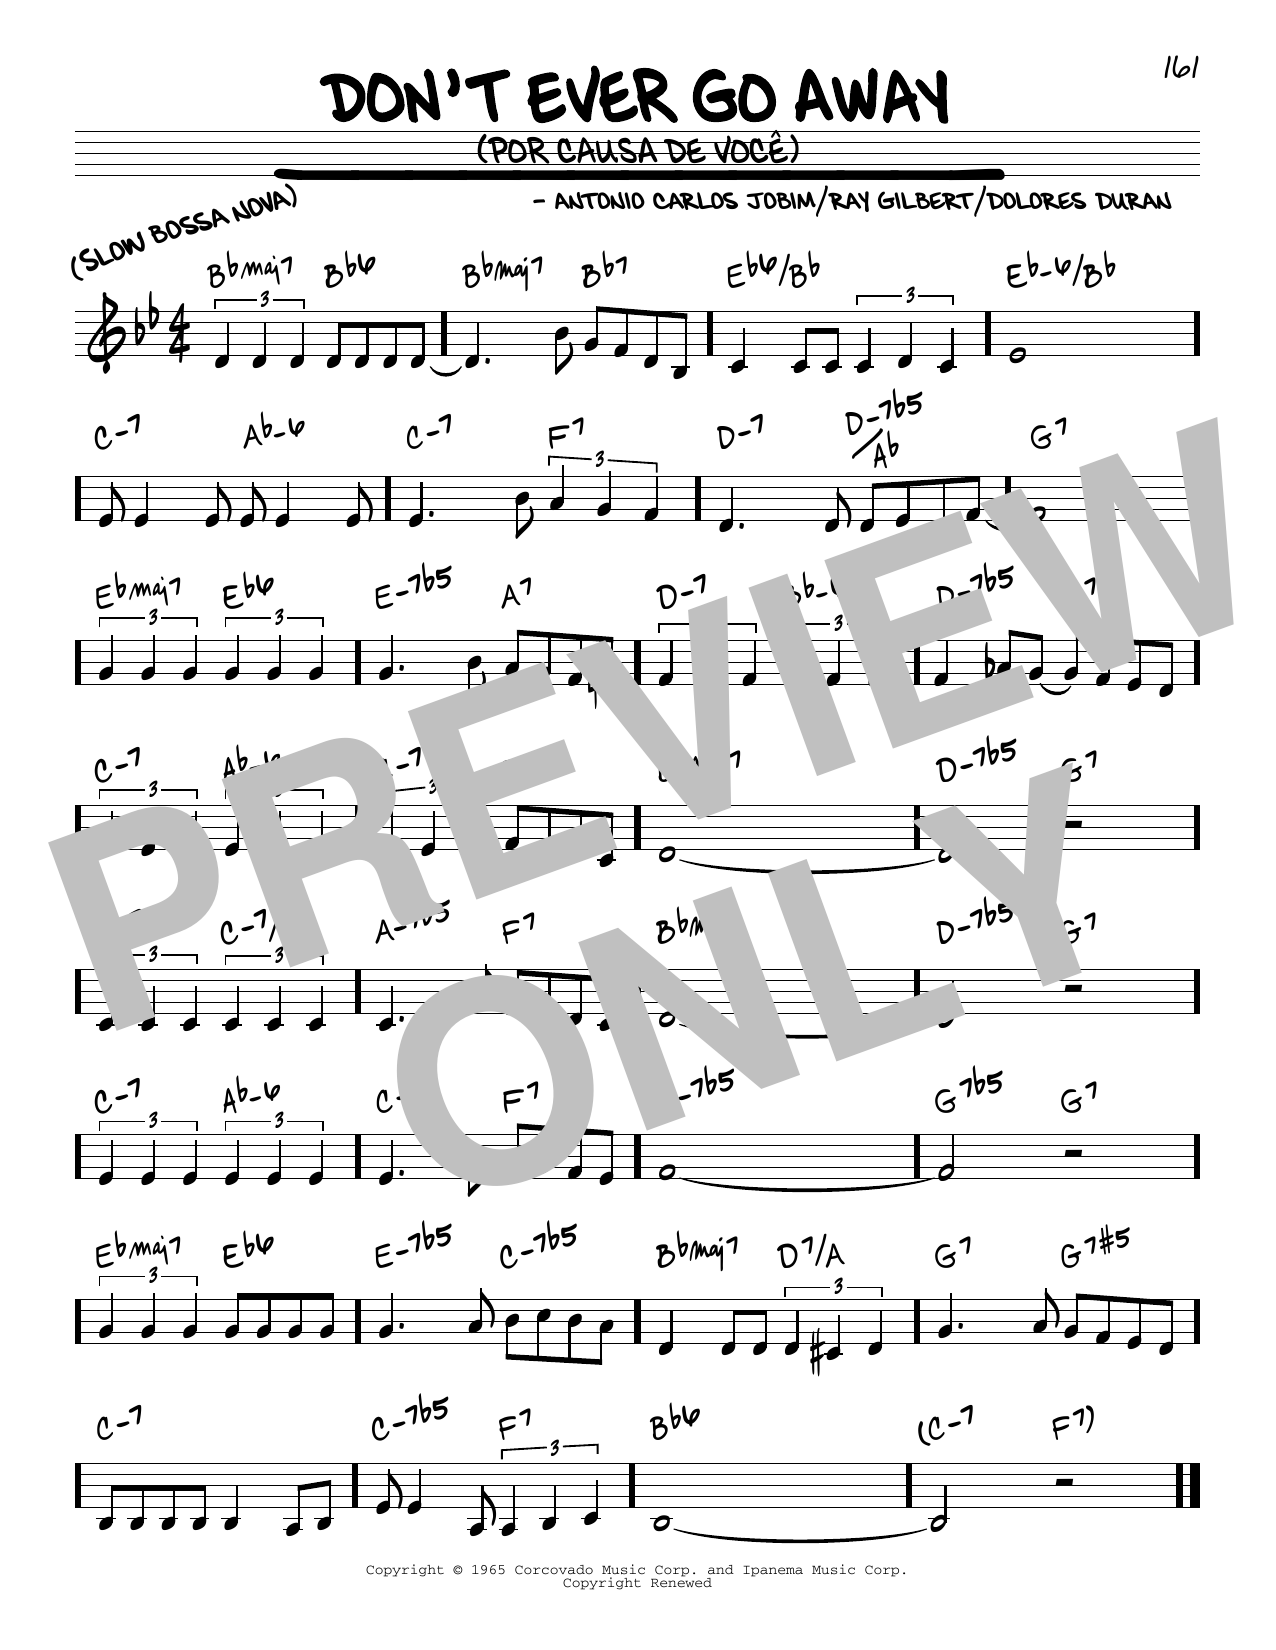 Antonio Carlos Jobim Don't Ever Go Away (Por Causa De Voce) Sheet Music Notes & Chords for Melody Line, Lyrics & Chords - Download or Print PDF